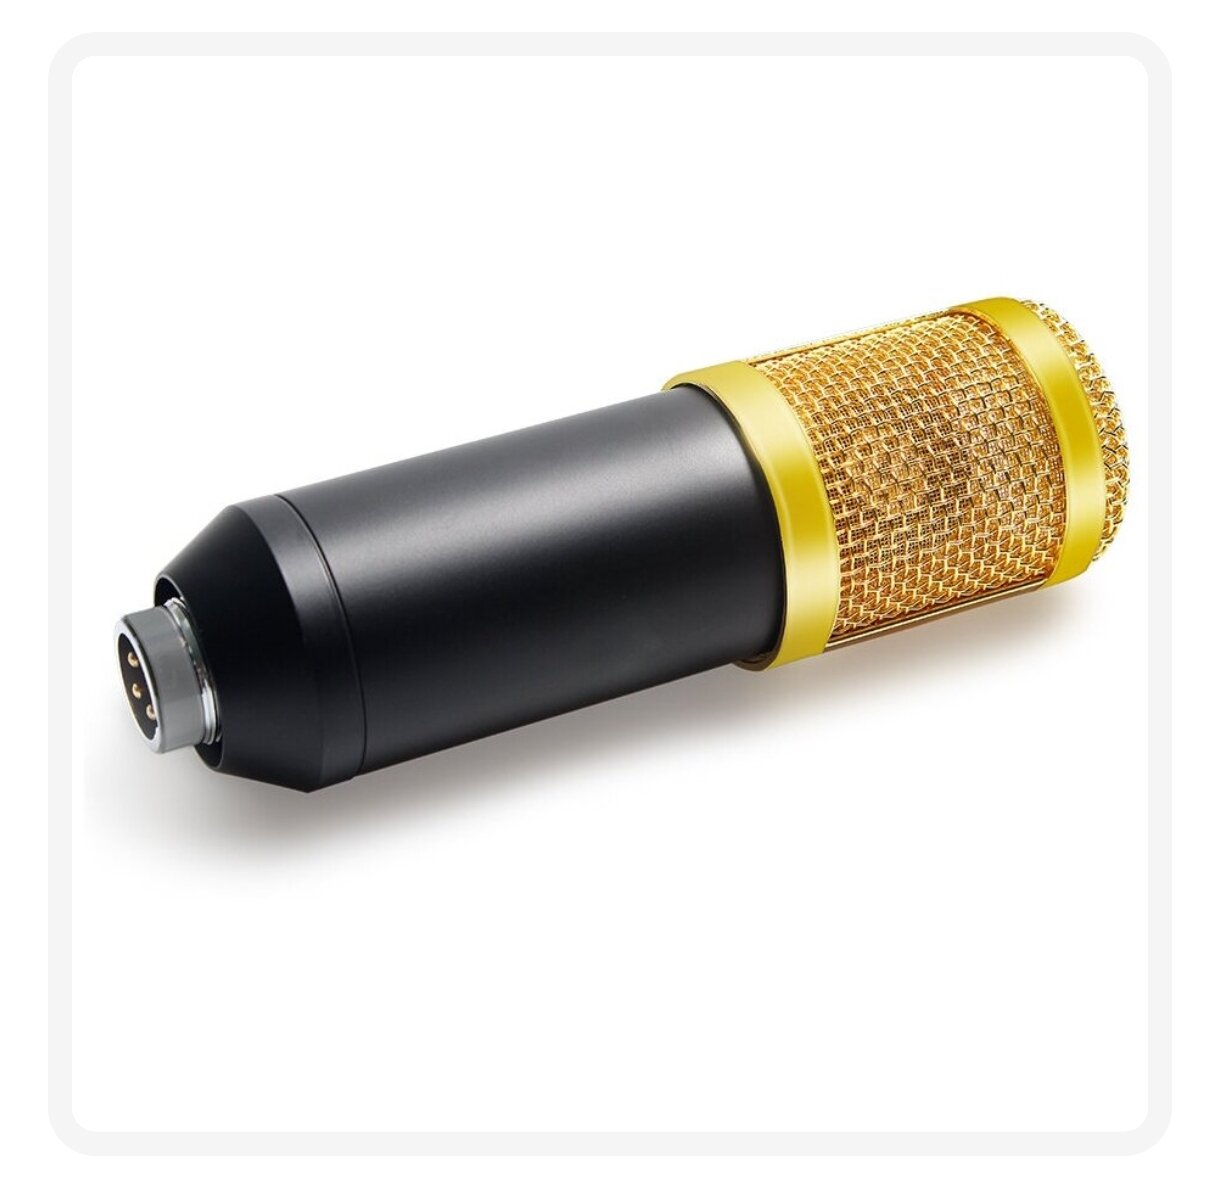 Конденсаторный студийный микрофон BM 800 со звуковой картой V8 (черный/золото)